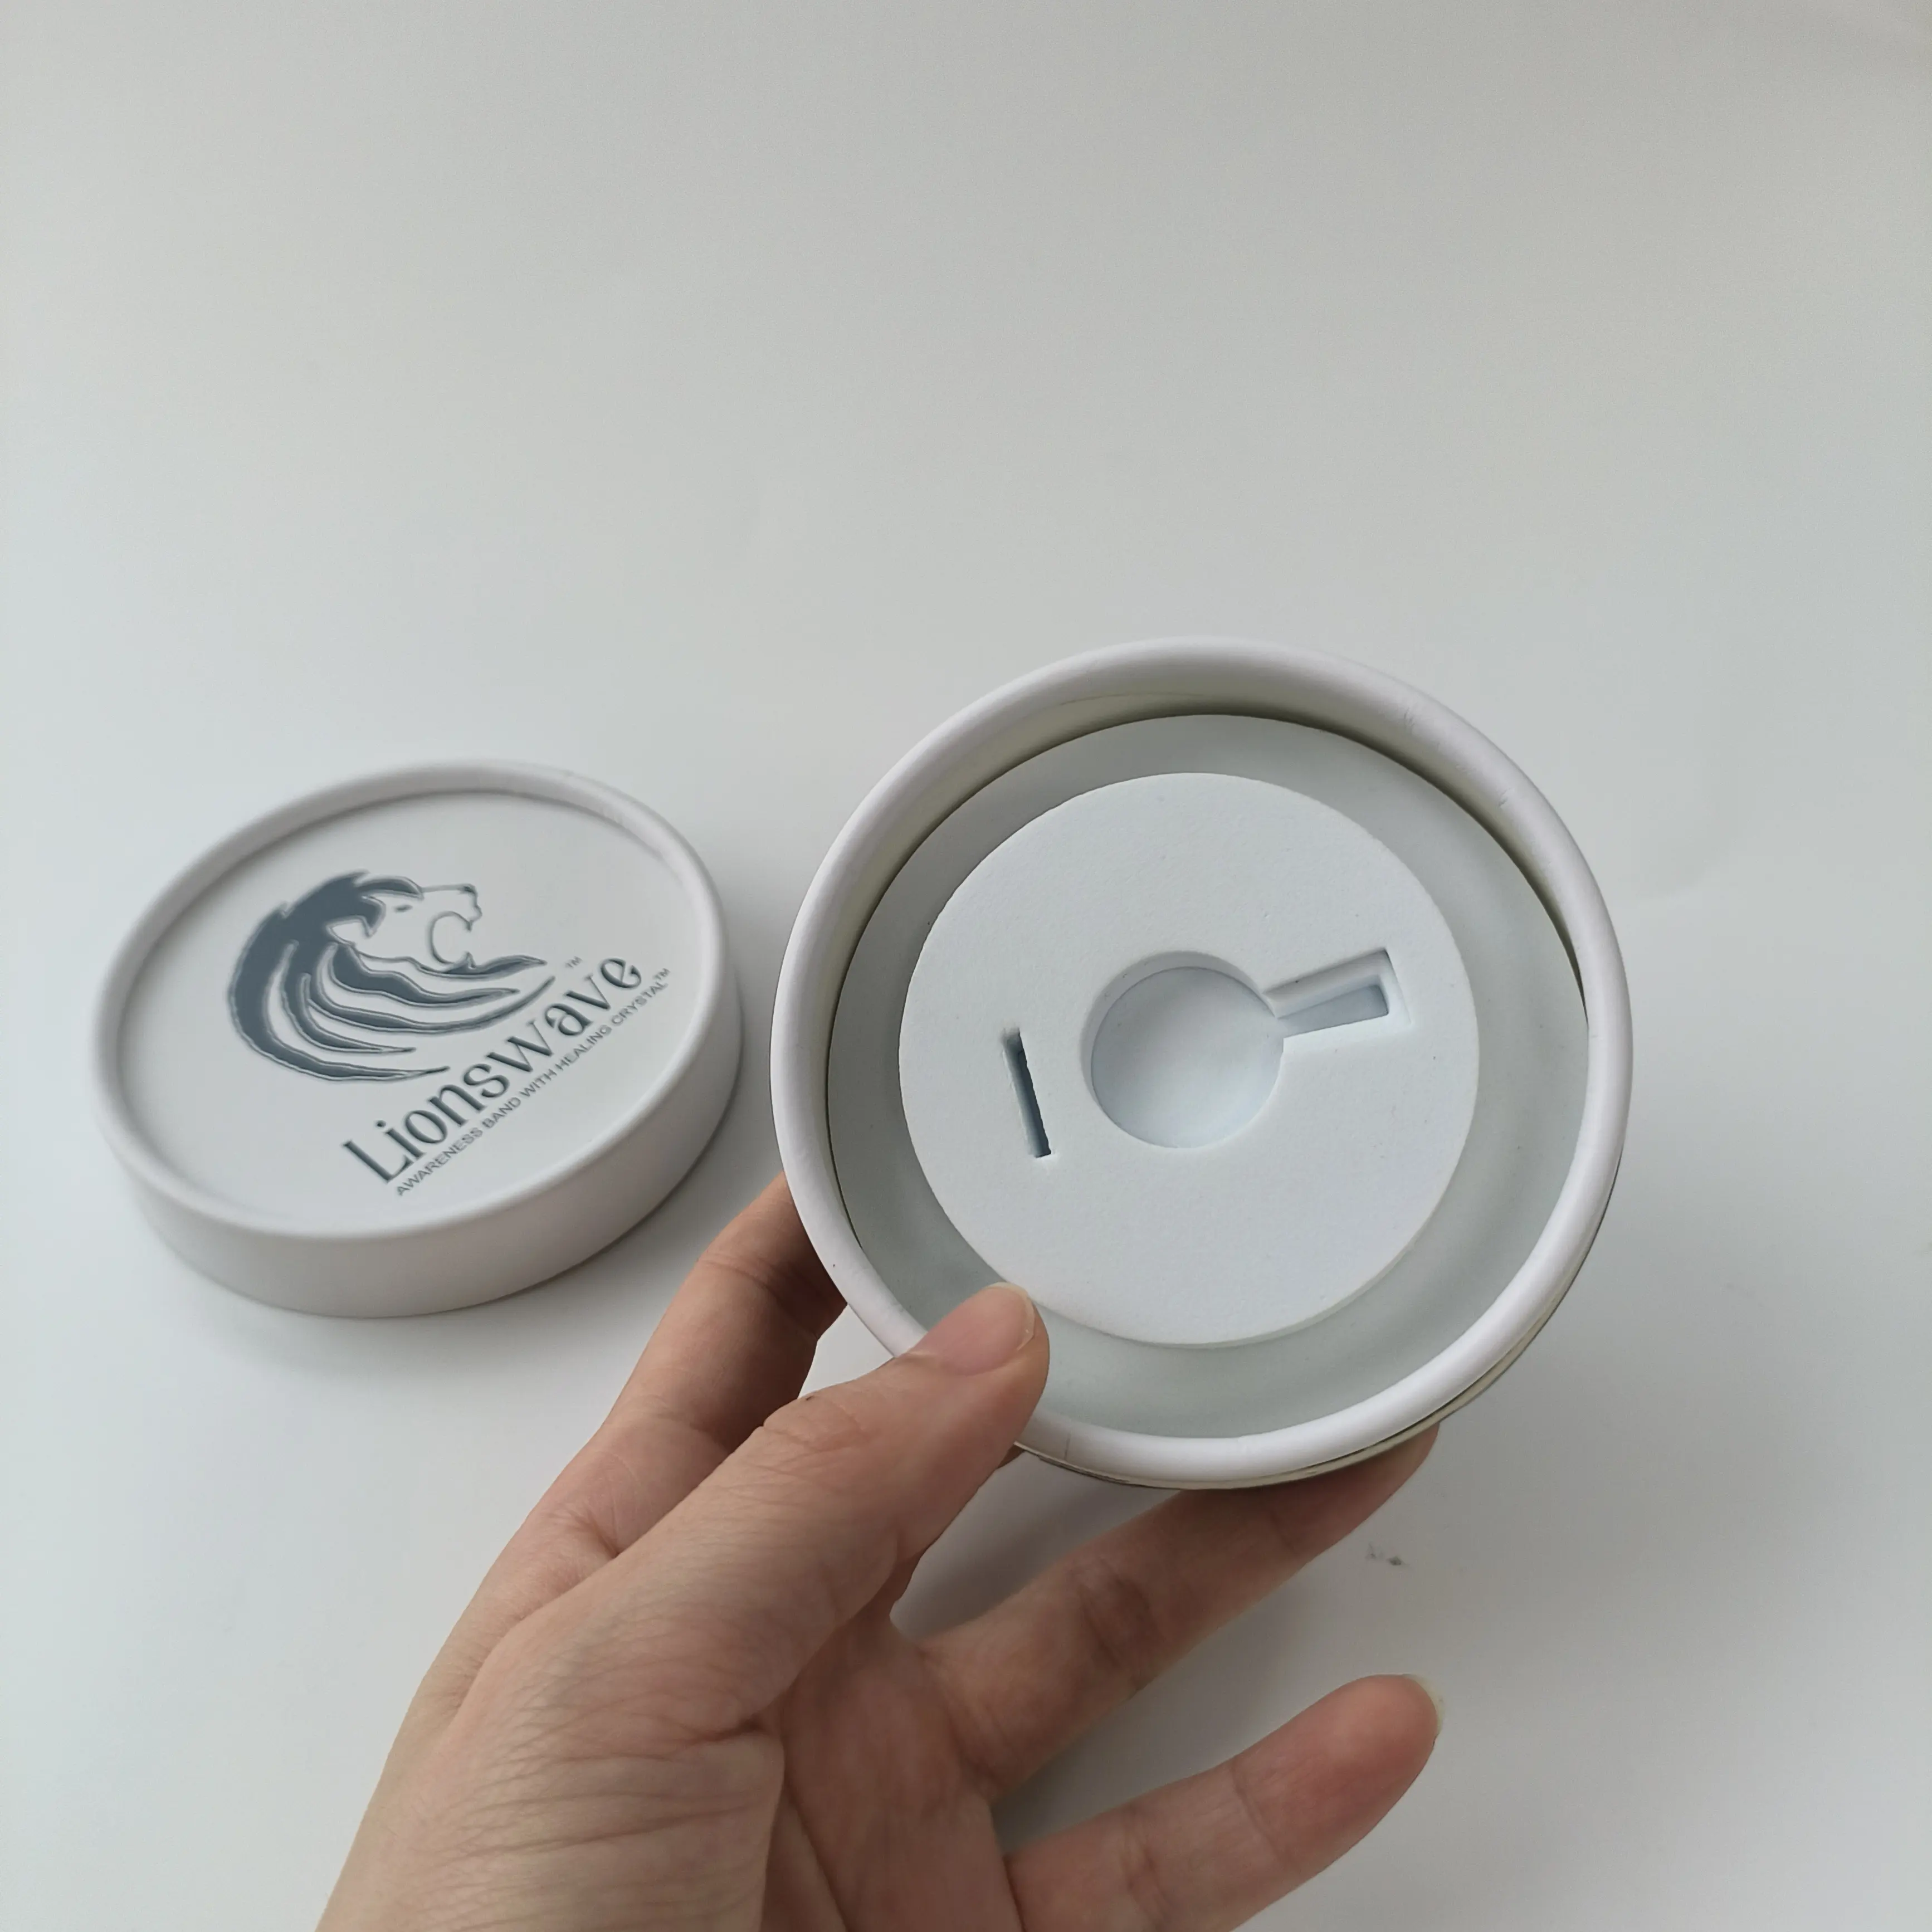 Tapa de embalaje y cajas base Venta caliente Impresión personalizada Anillo redondo de lujo Caja de papel de joyería Embalaje con inserto de espuma Eva